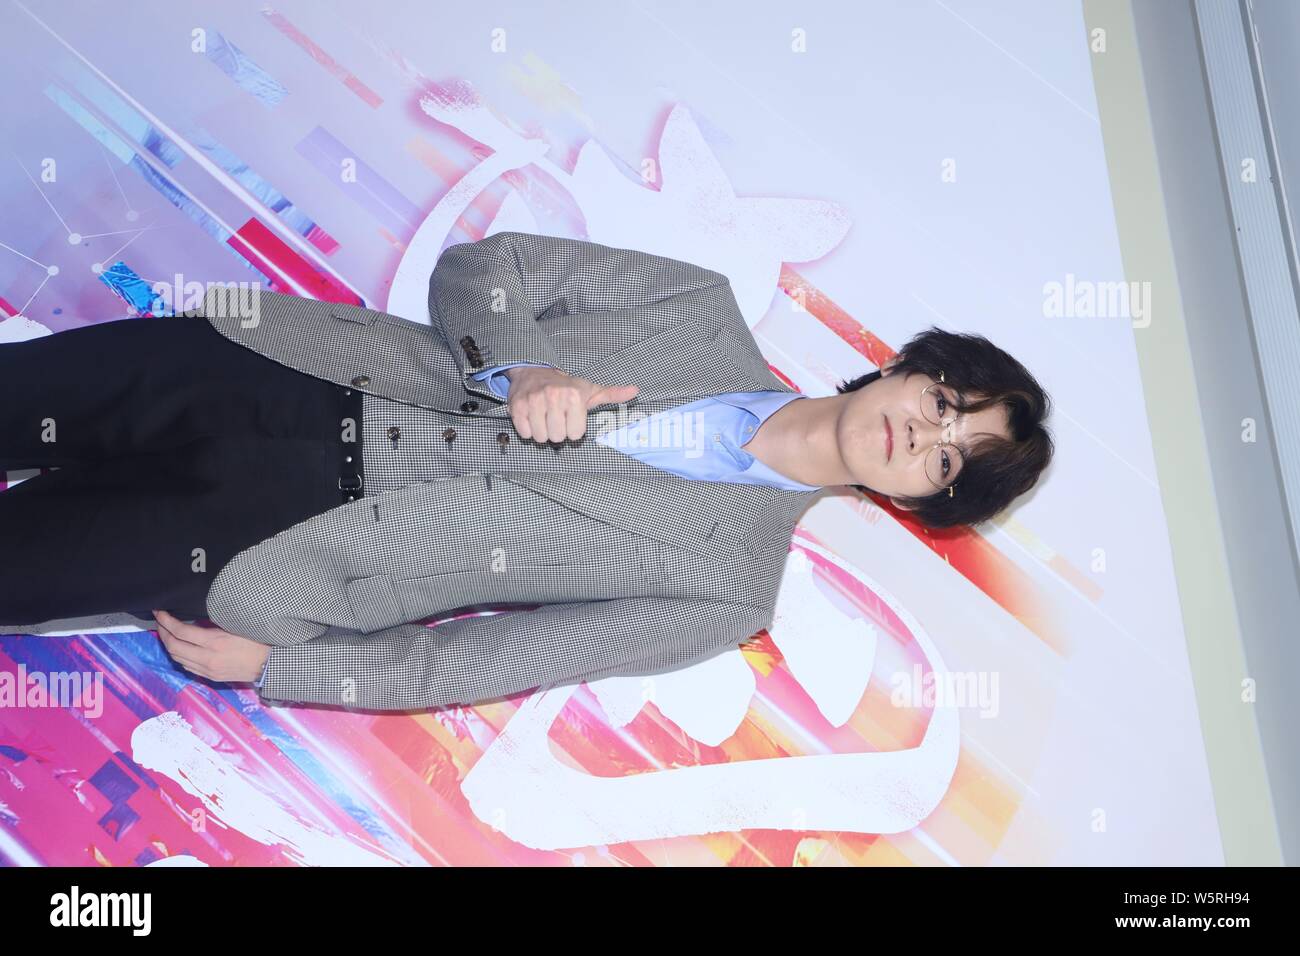 Chinesische Sänger und Schauspieler Lu Han eine Pressekonferenz für die neue TV-Serie "Cross Fire" von Shanghai Youhug Media Co. Ltd. in Shanghai, China produziert werden beachtet Stockfoto